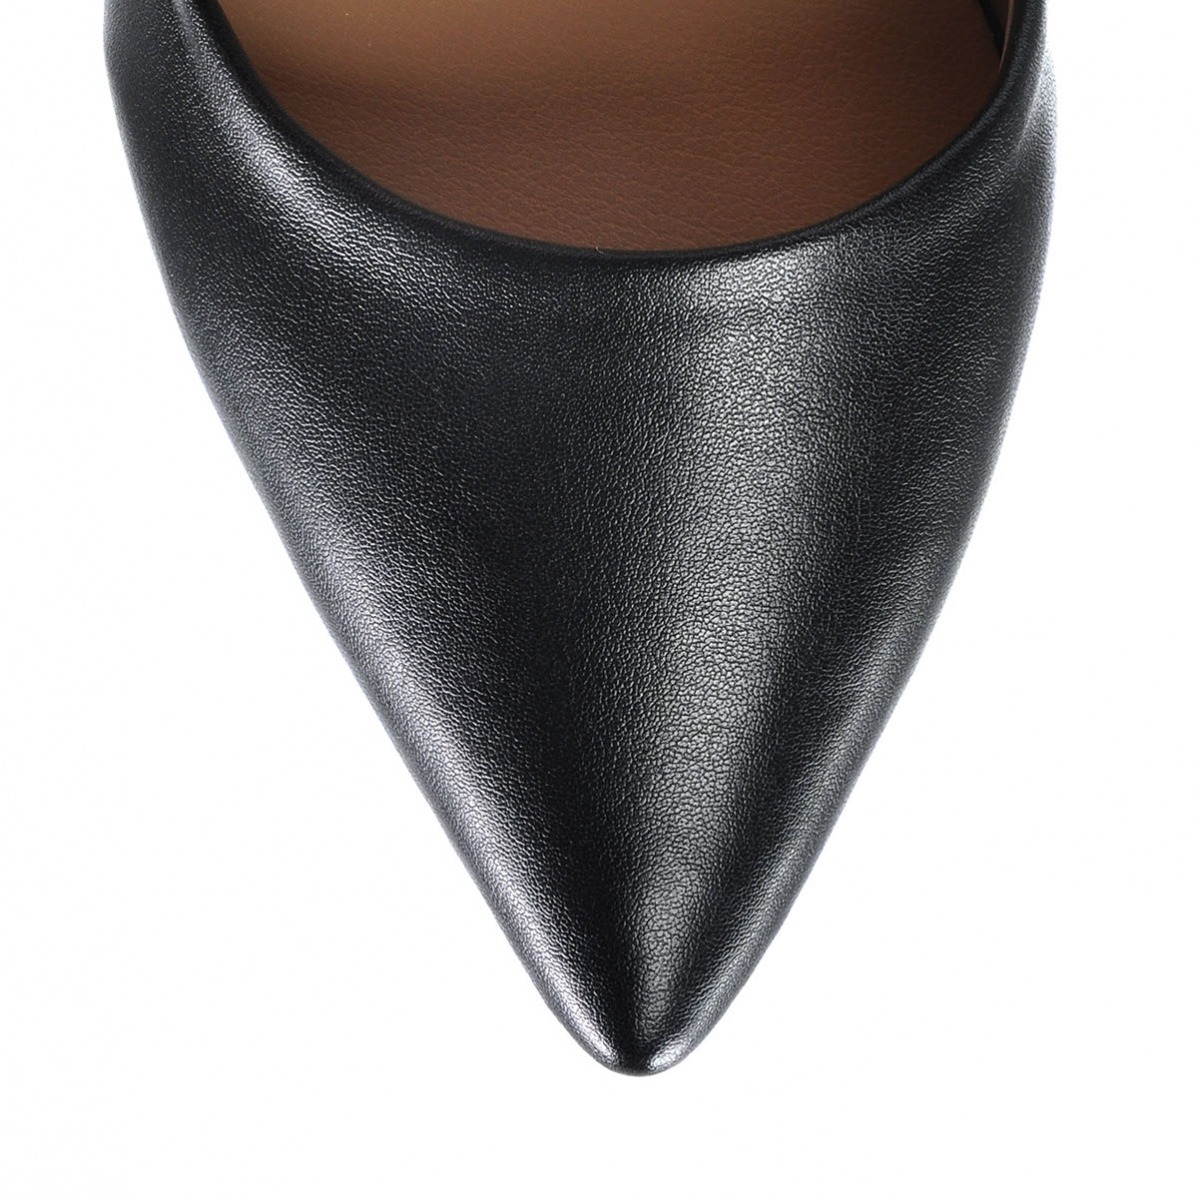 Flo Kadın  Siyah Klasik Topuklu Ayakkabı VZN-332Y. 5